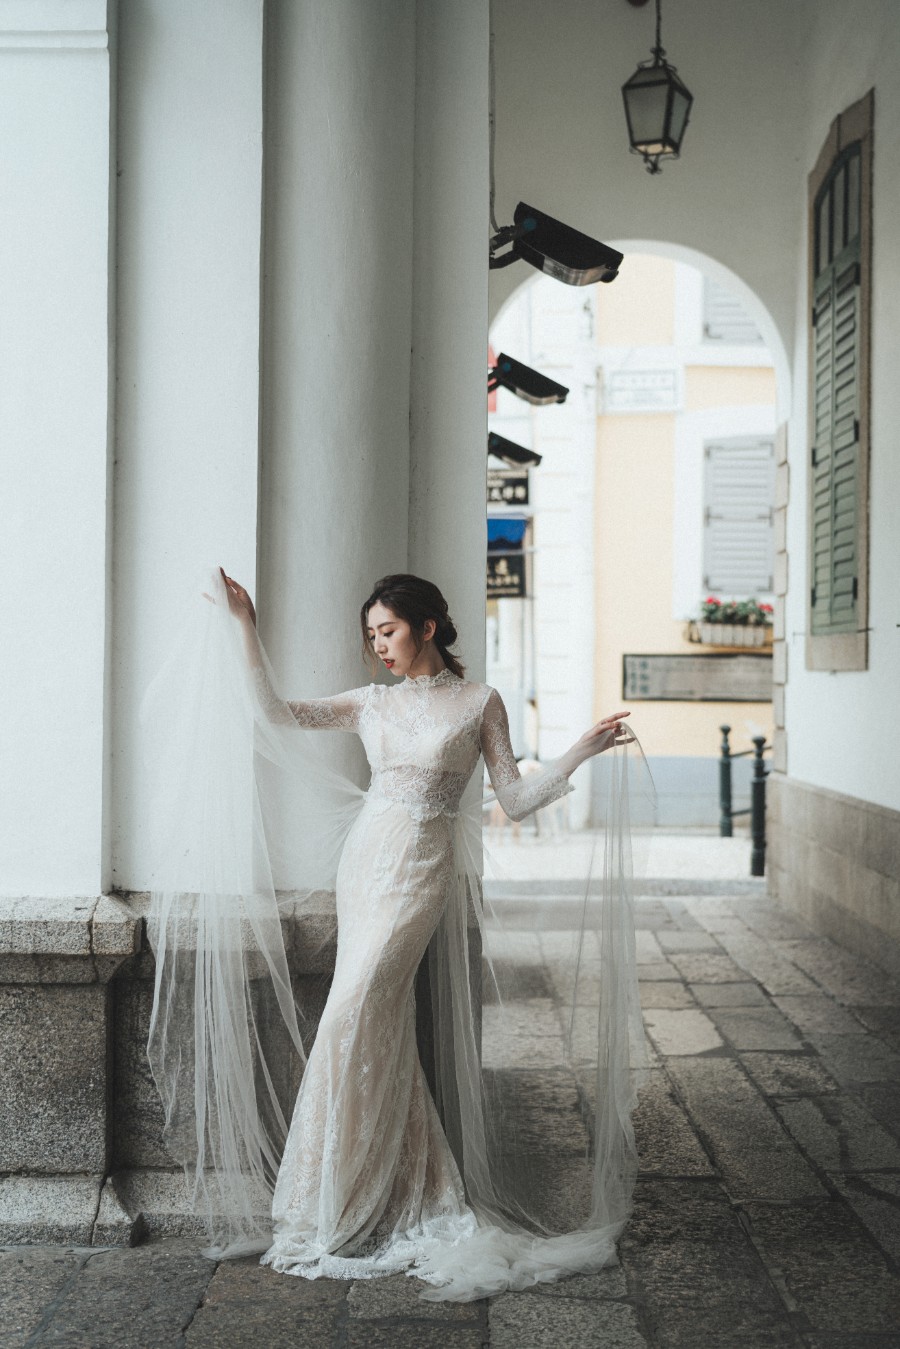 Macau Outdoor Pre-Wedding Photoshoot At Largo do Senado, Pousada de Coloane by Eden on OneThreeOneFour 4